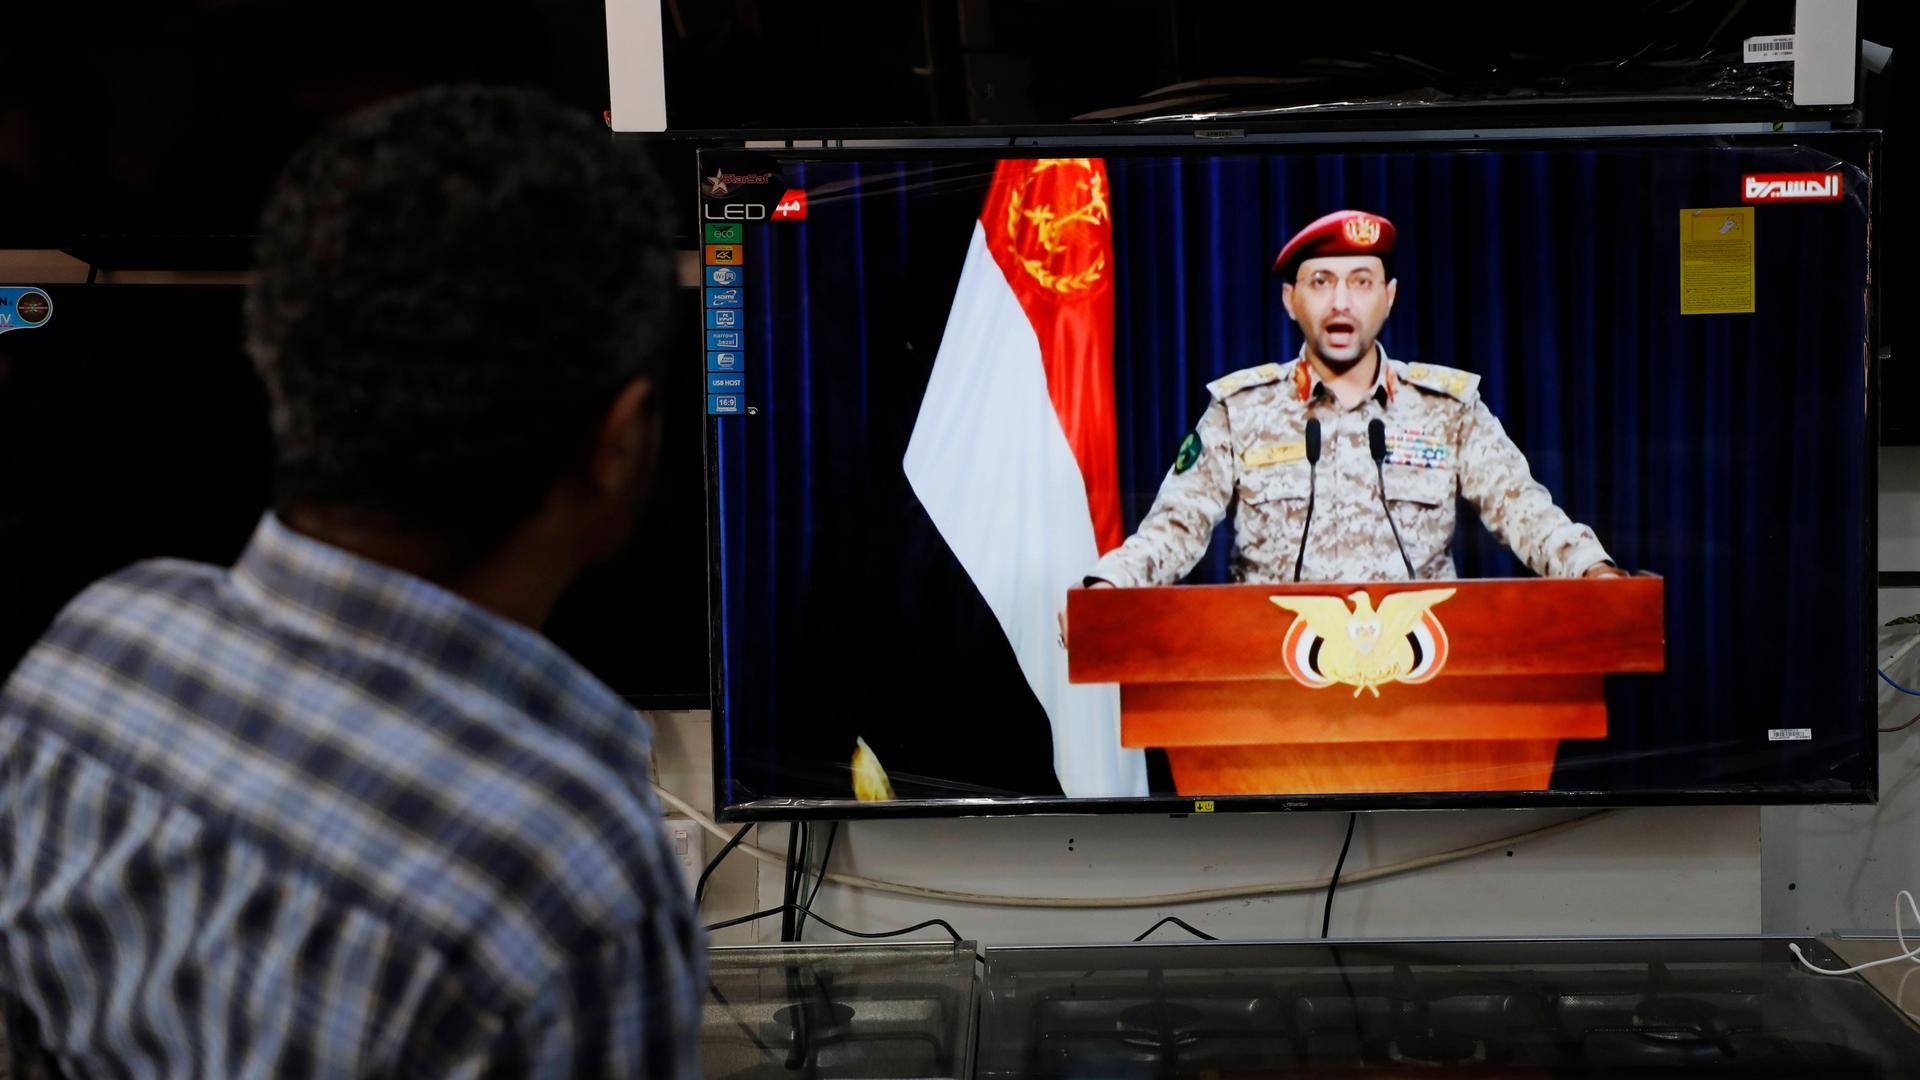 Ein Sprecher der Huthi-Rebellen gibt im Fernsehen ein Statement zum Angriff auf das Schiff ab. Davor steht ein Mann und hört zu.